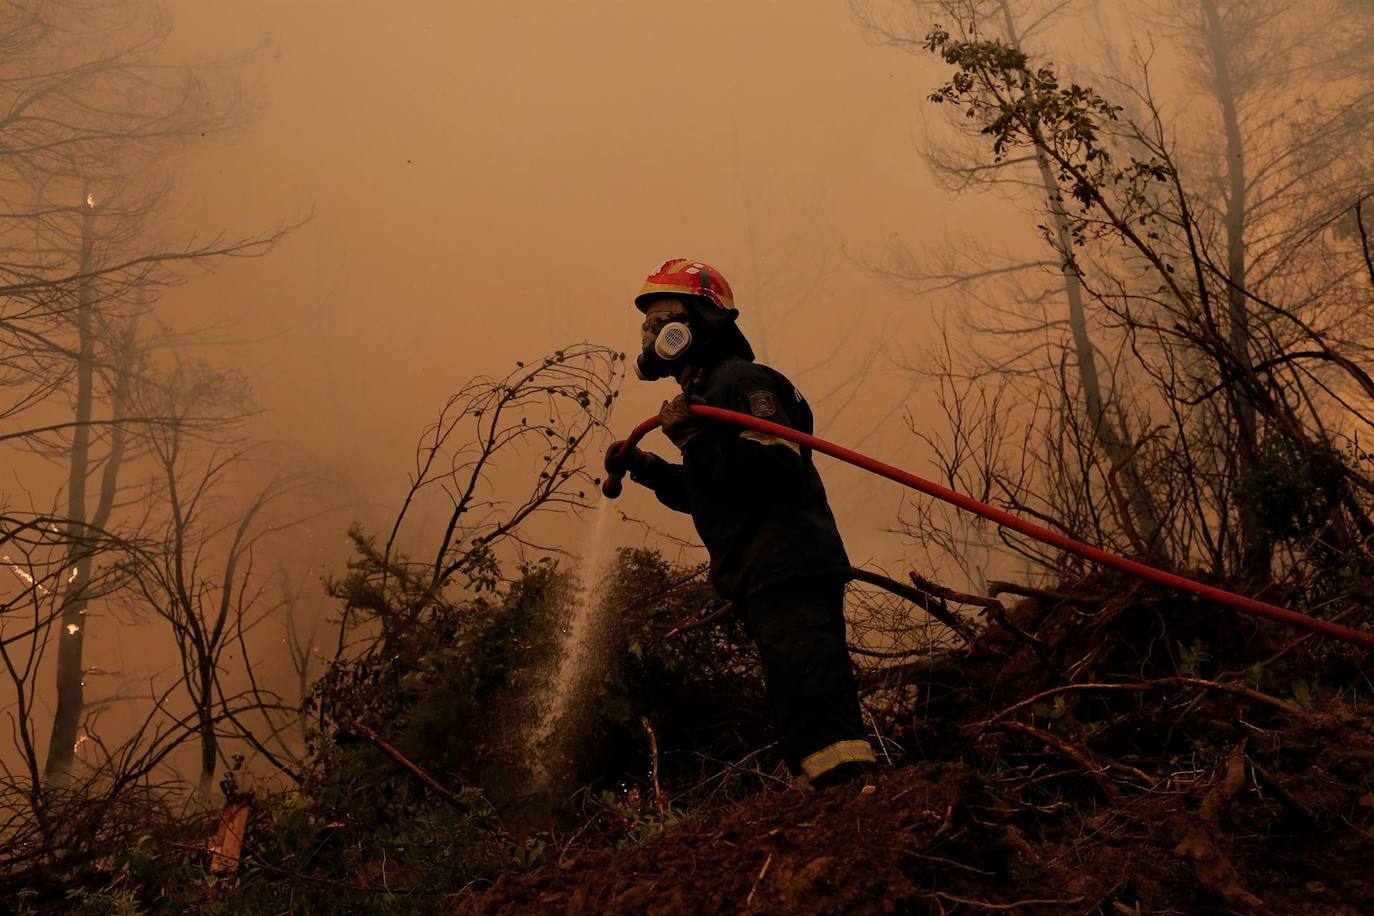 Grecia investiga si una organización criminal está detrás de los incendios